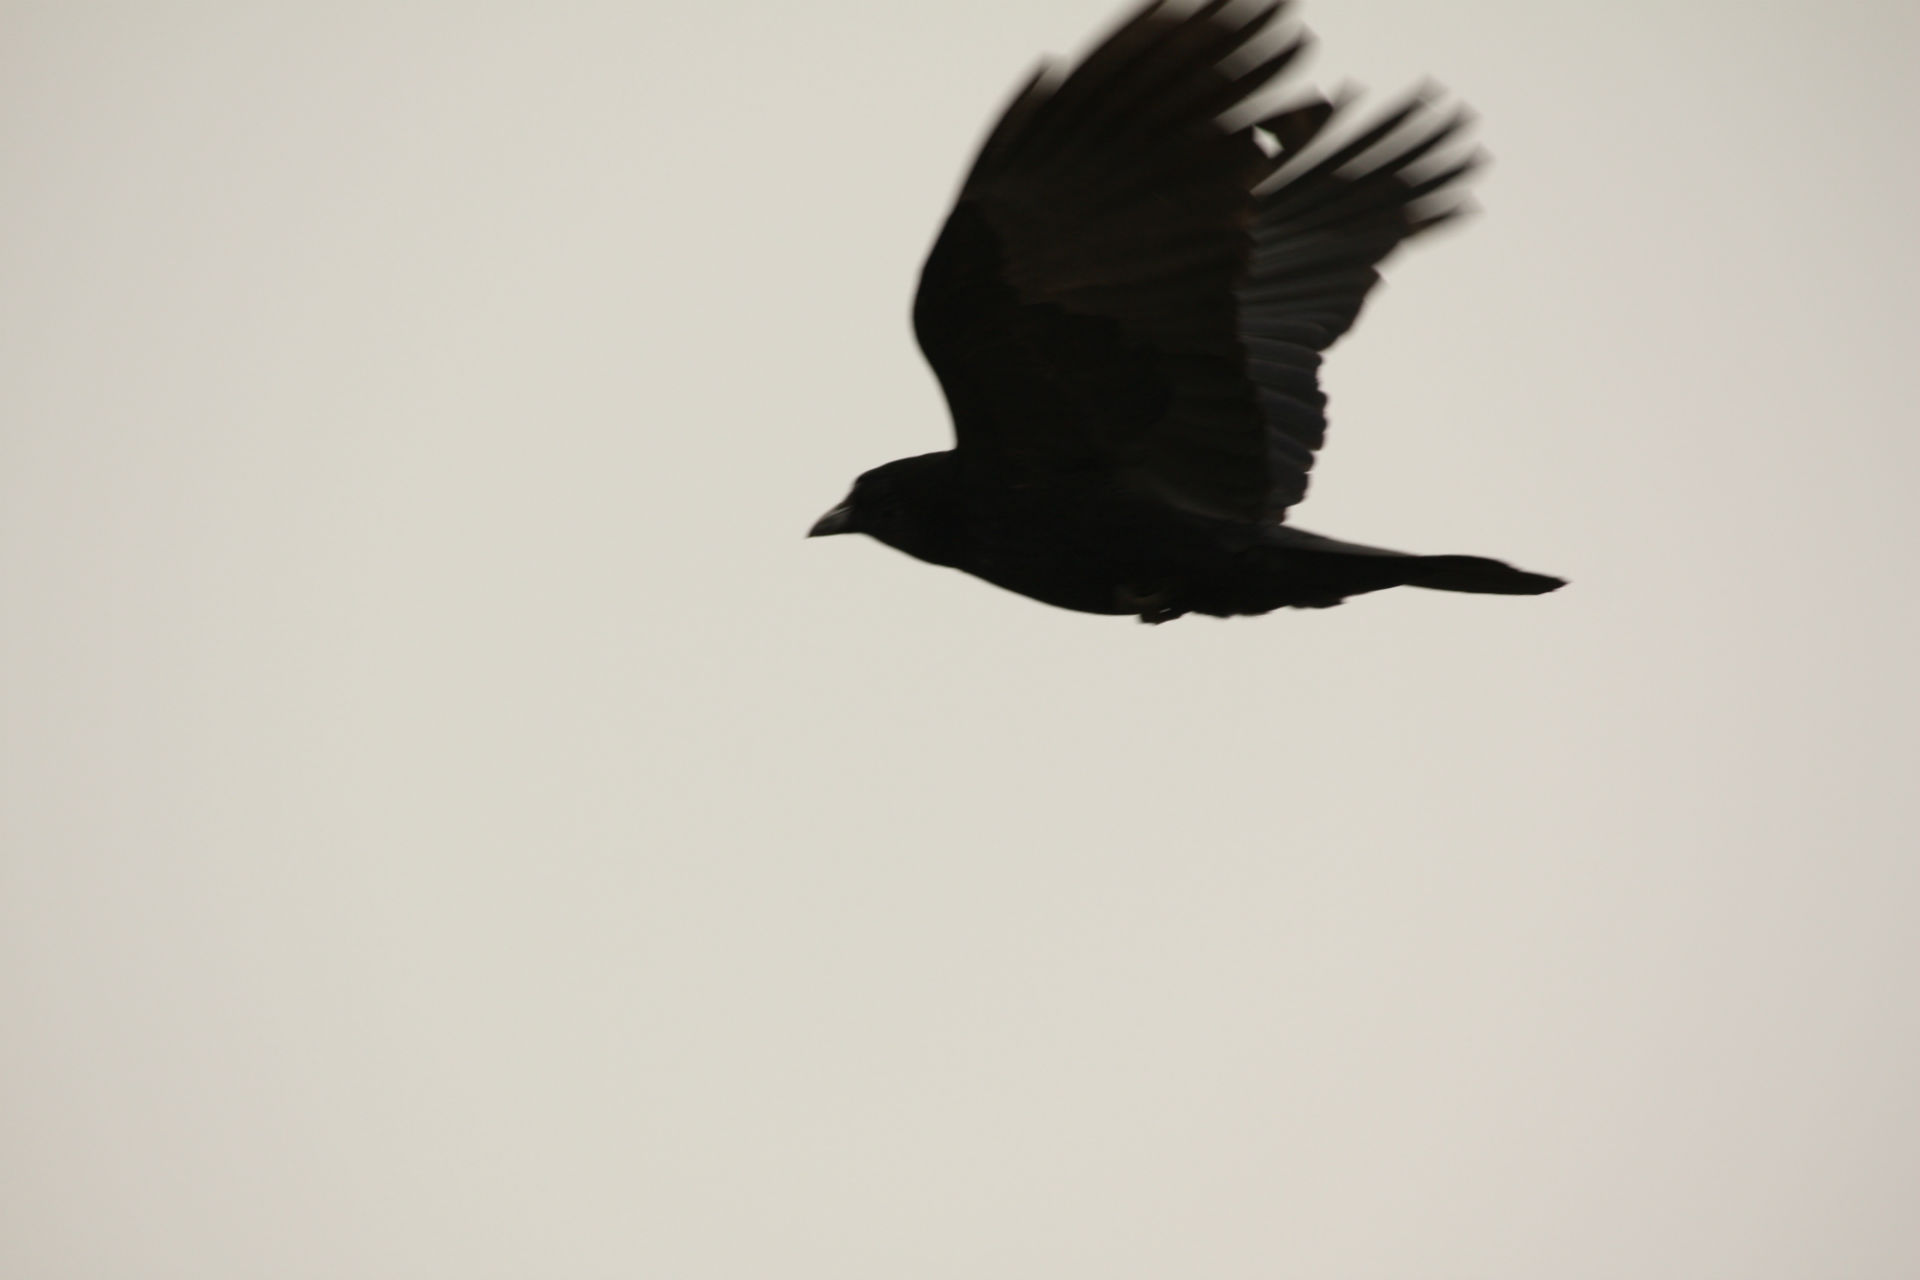 movie, the crow